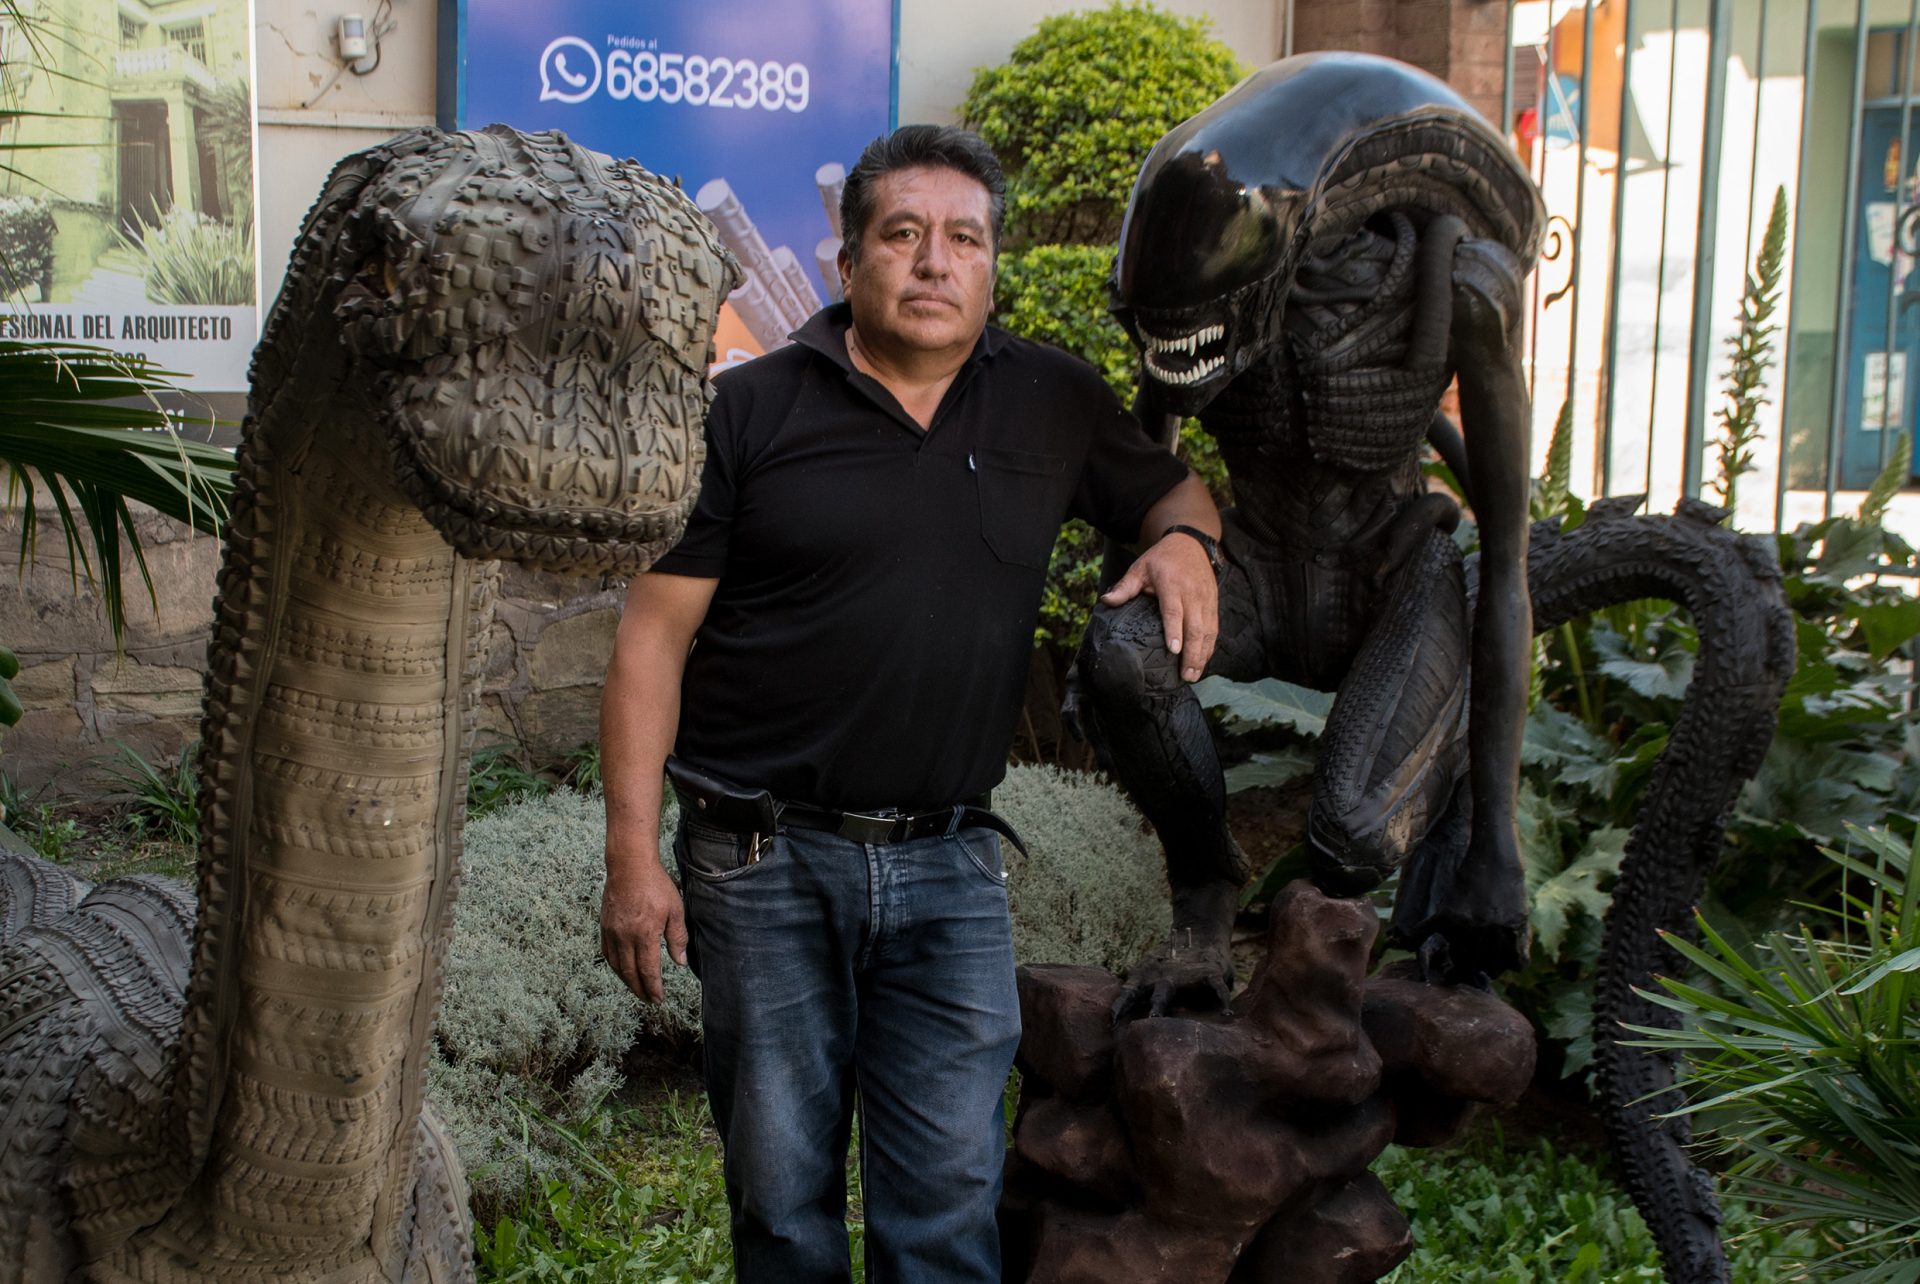 El artista plástico Sandro Arellano (c) posa, el pasado 1 de junio, junto a una de sus esculturas hecha de neumáticos descartados, en Cochabamba (Bolivia). EFE/Jorge Ábrego